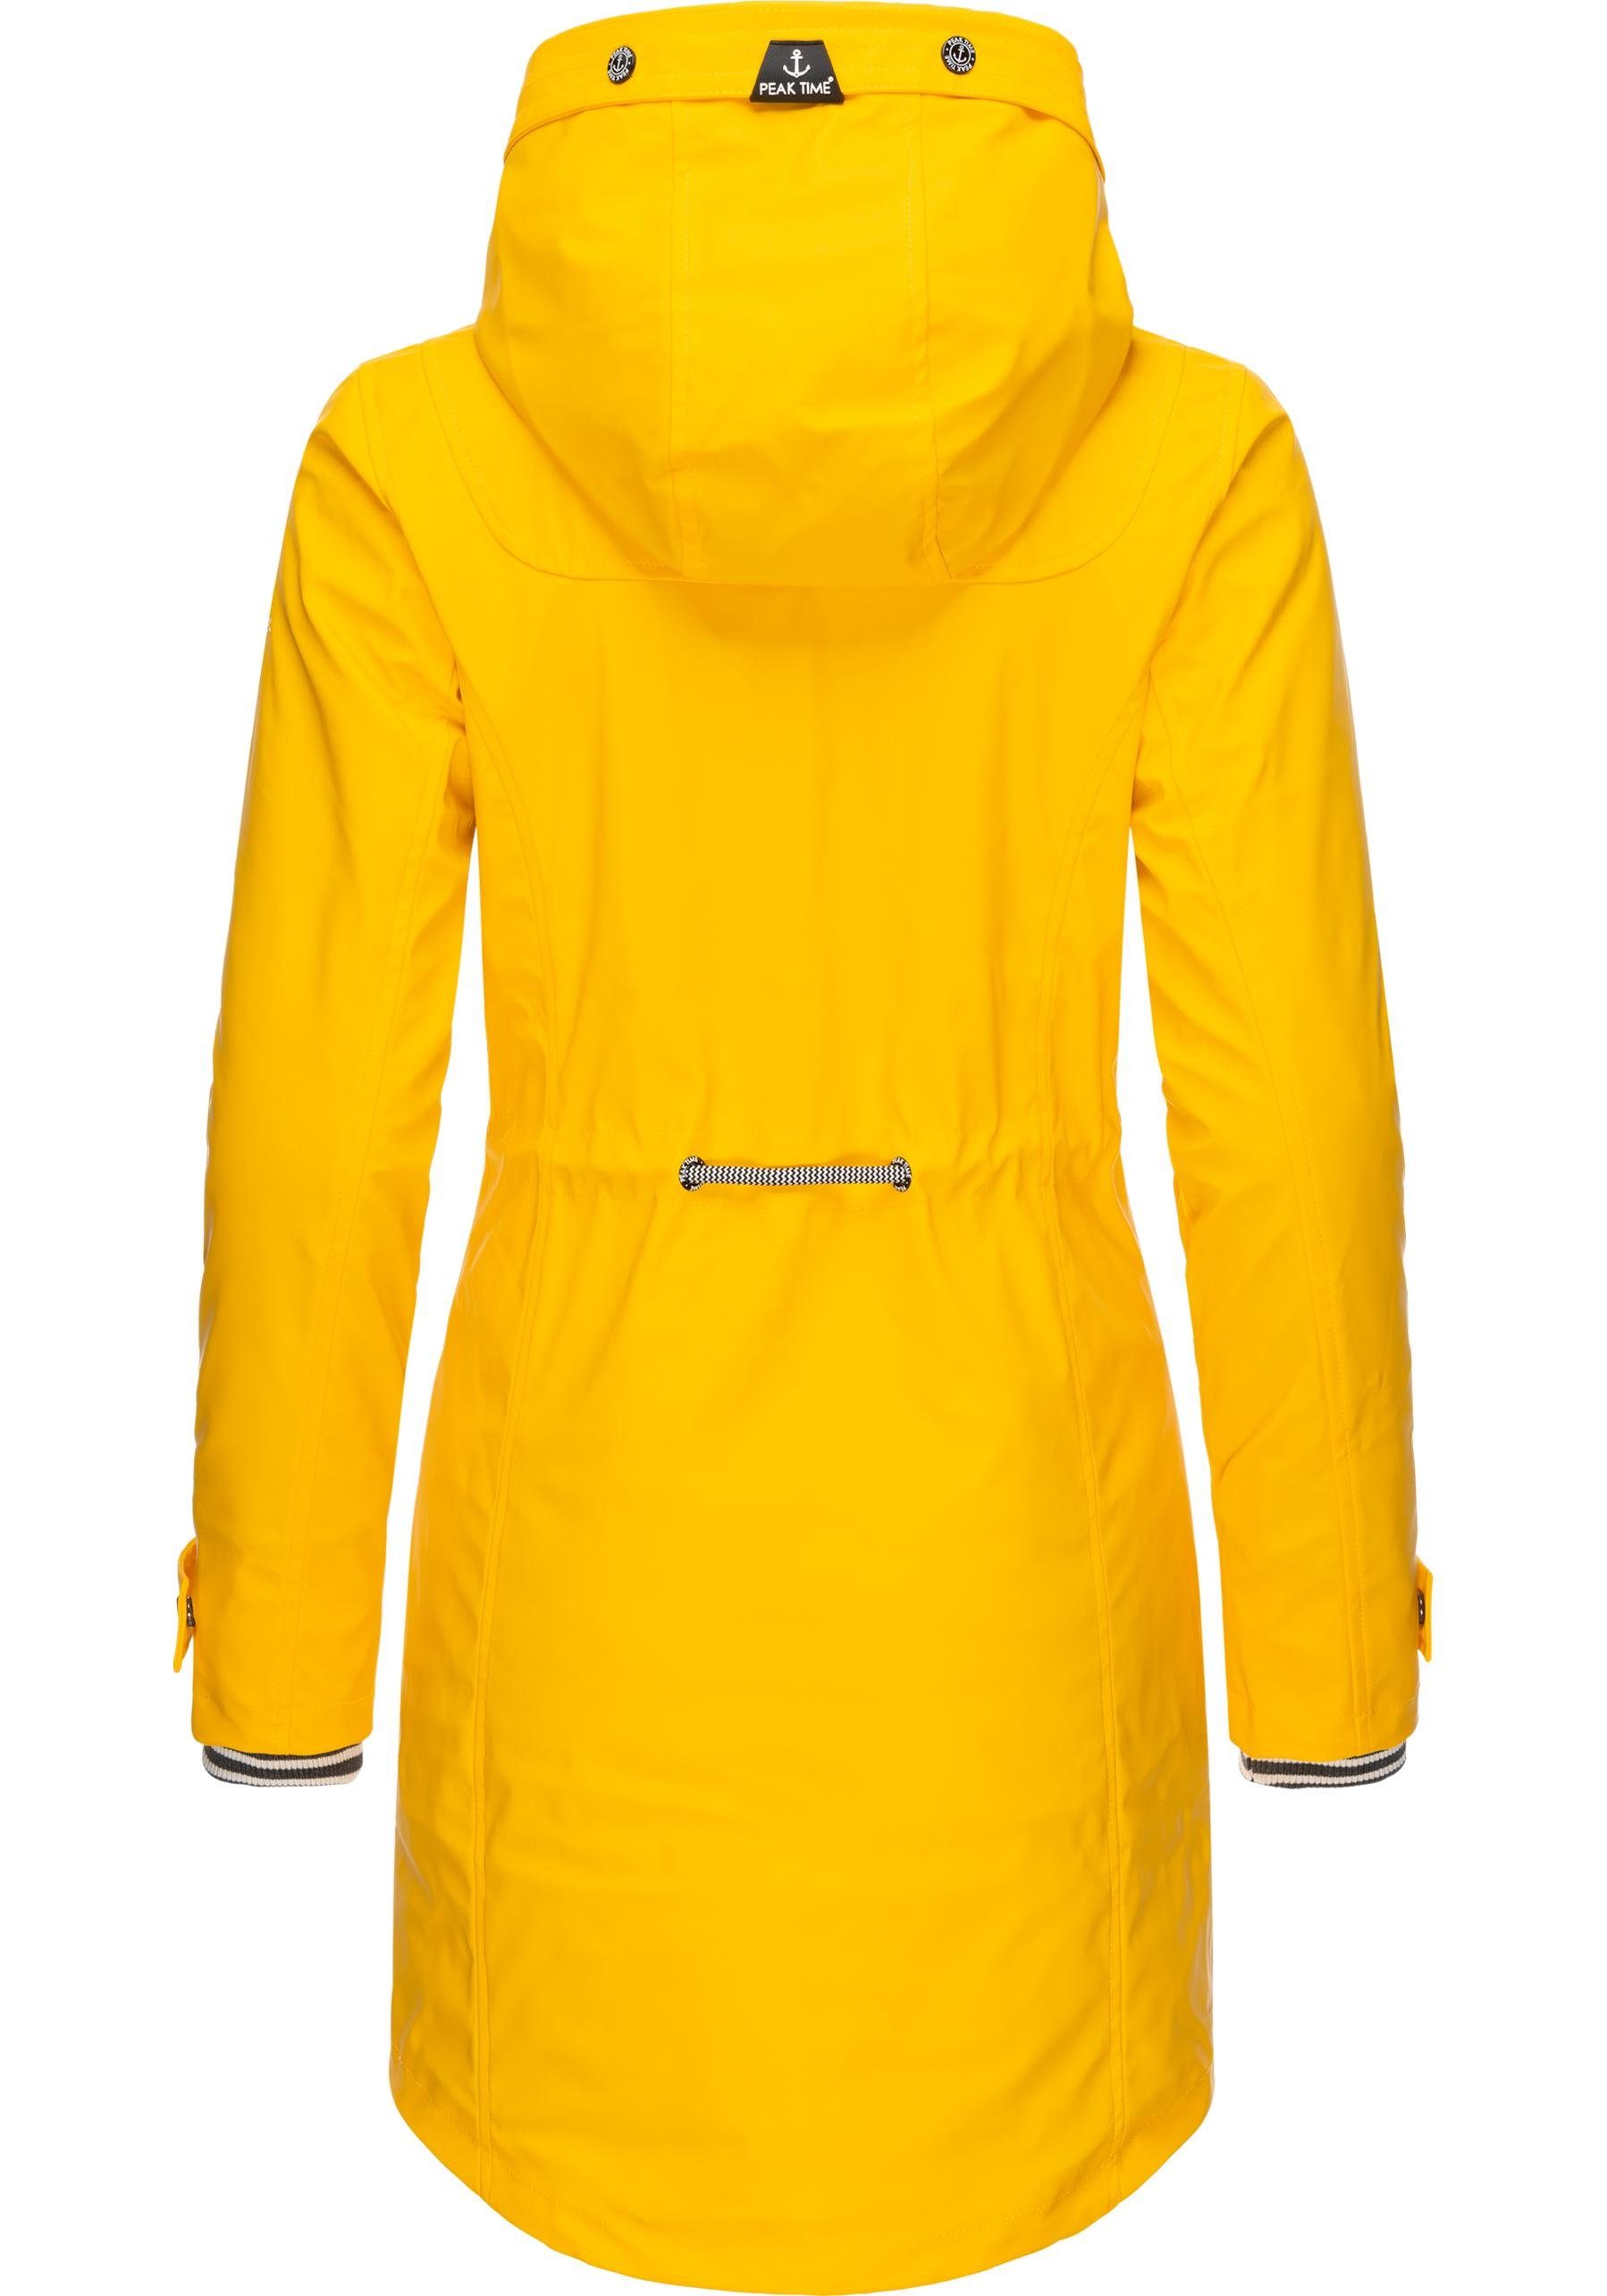 Damen Regenmantel TIME PEAK für taillierter L60042 stylisch dottergelb Regenjacke